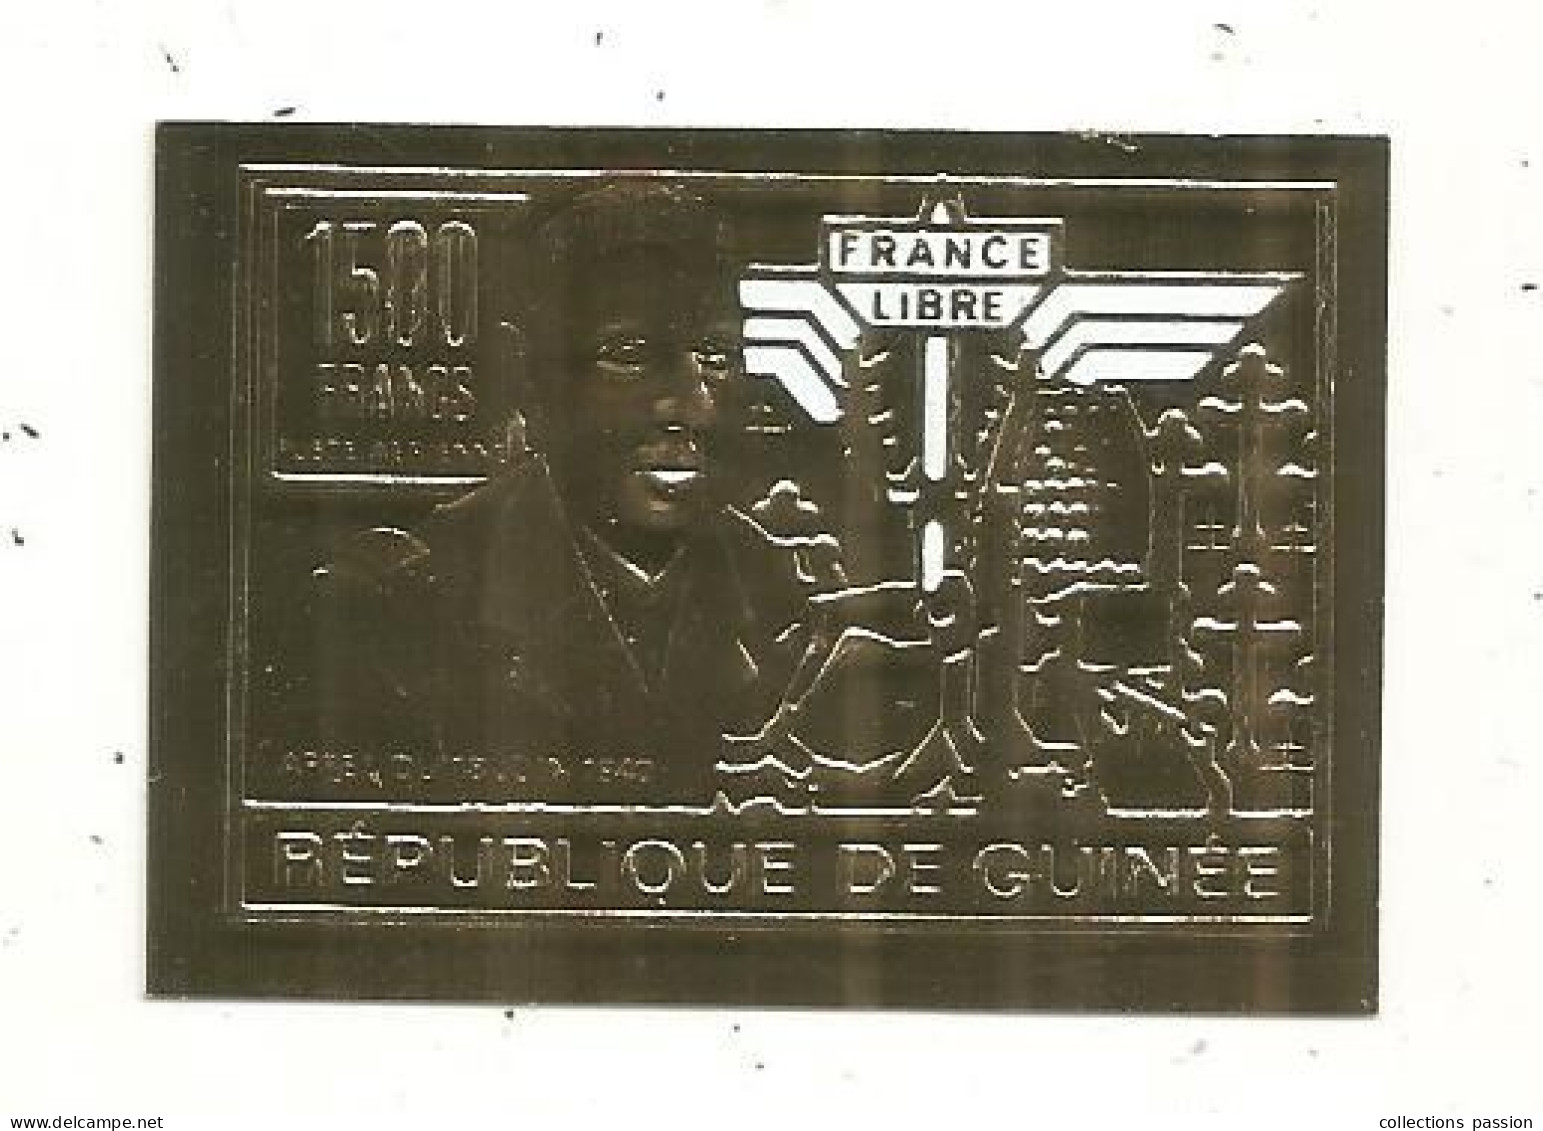 Timbre , GUINEE,1500 Francs , FRANCE LIBRE , Appel Du 18 Juin 1940, Général DE GAULLE - Guinée (1958-...)